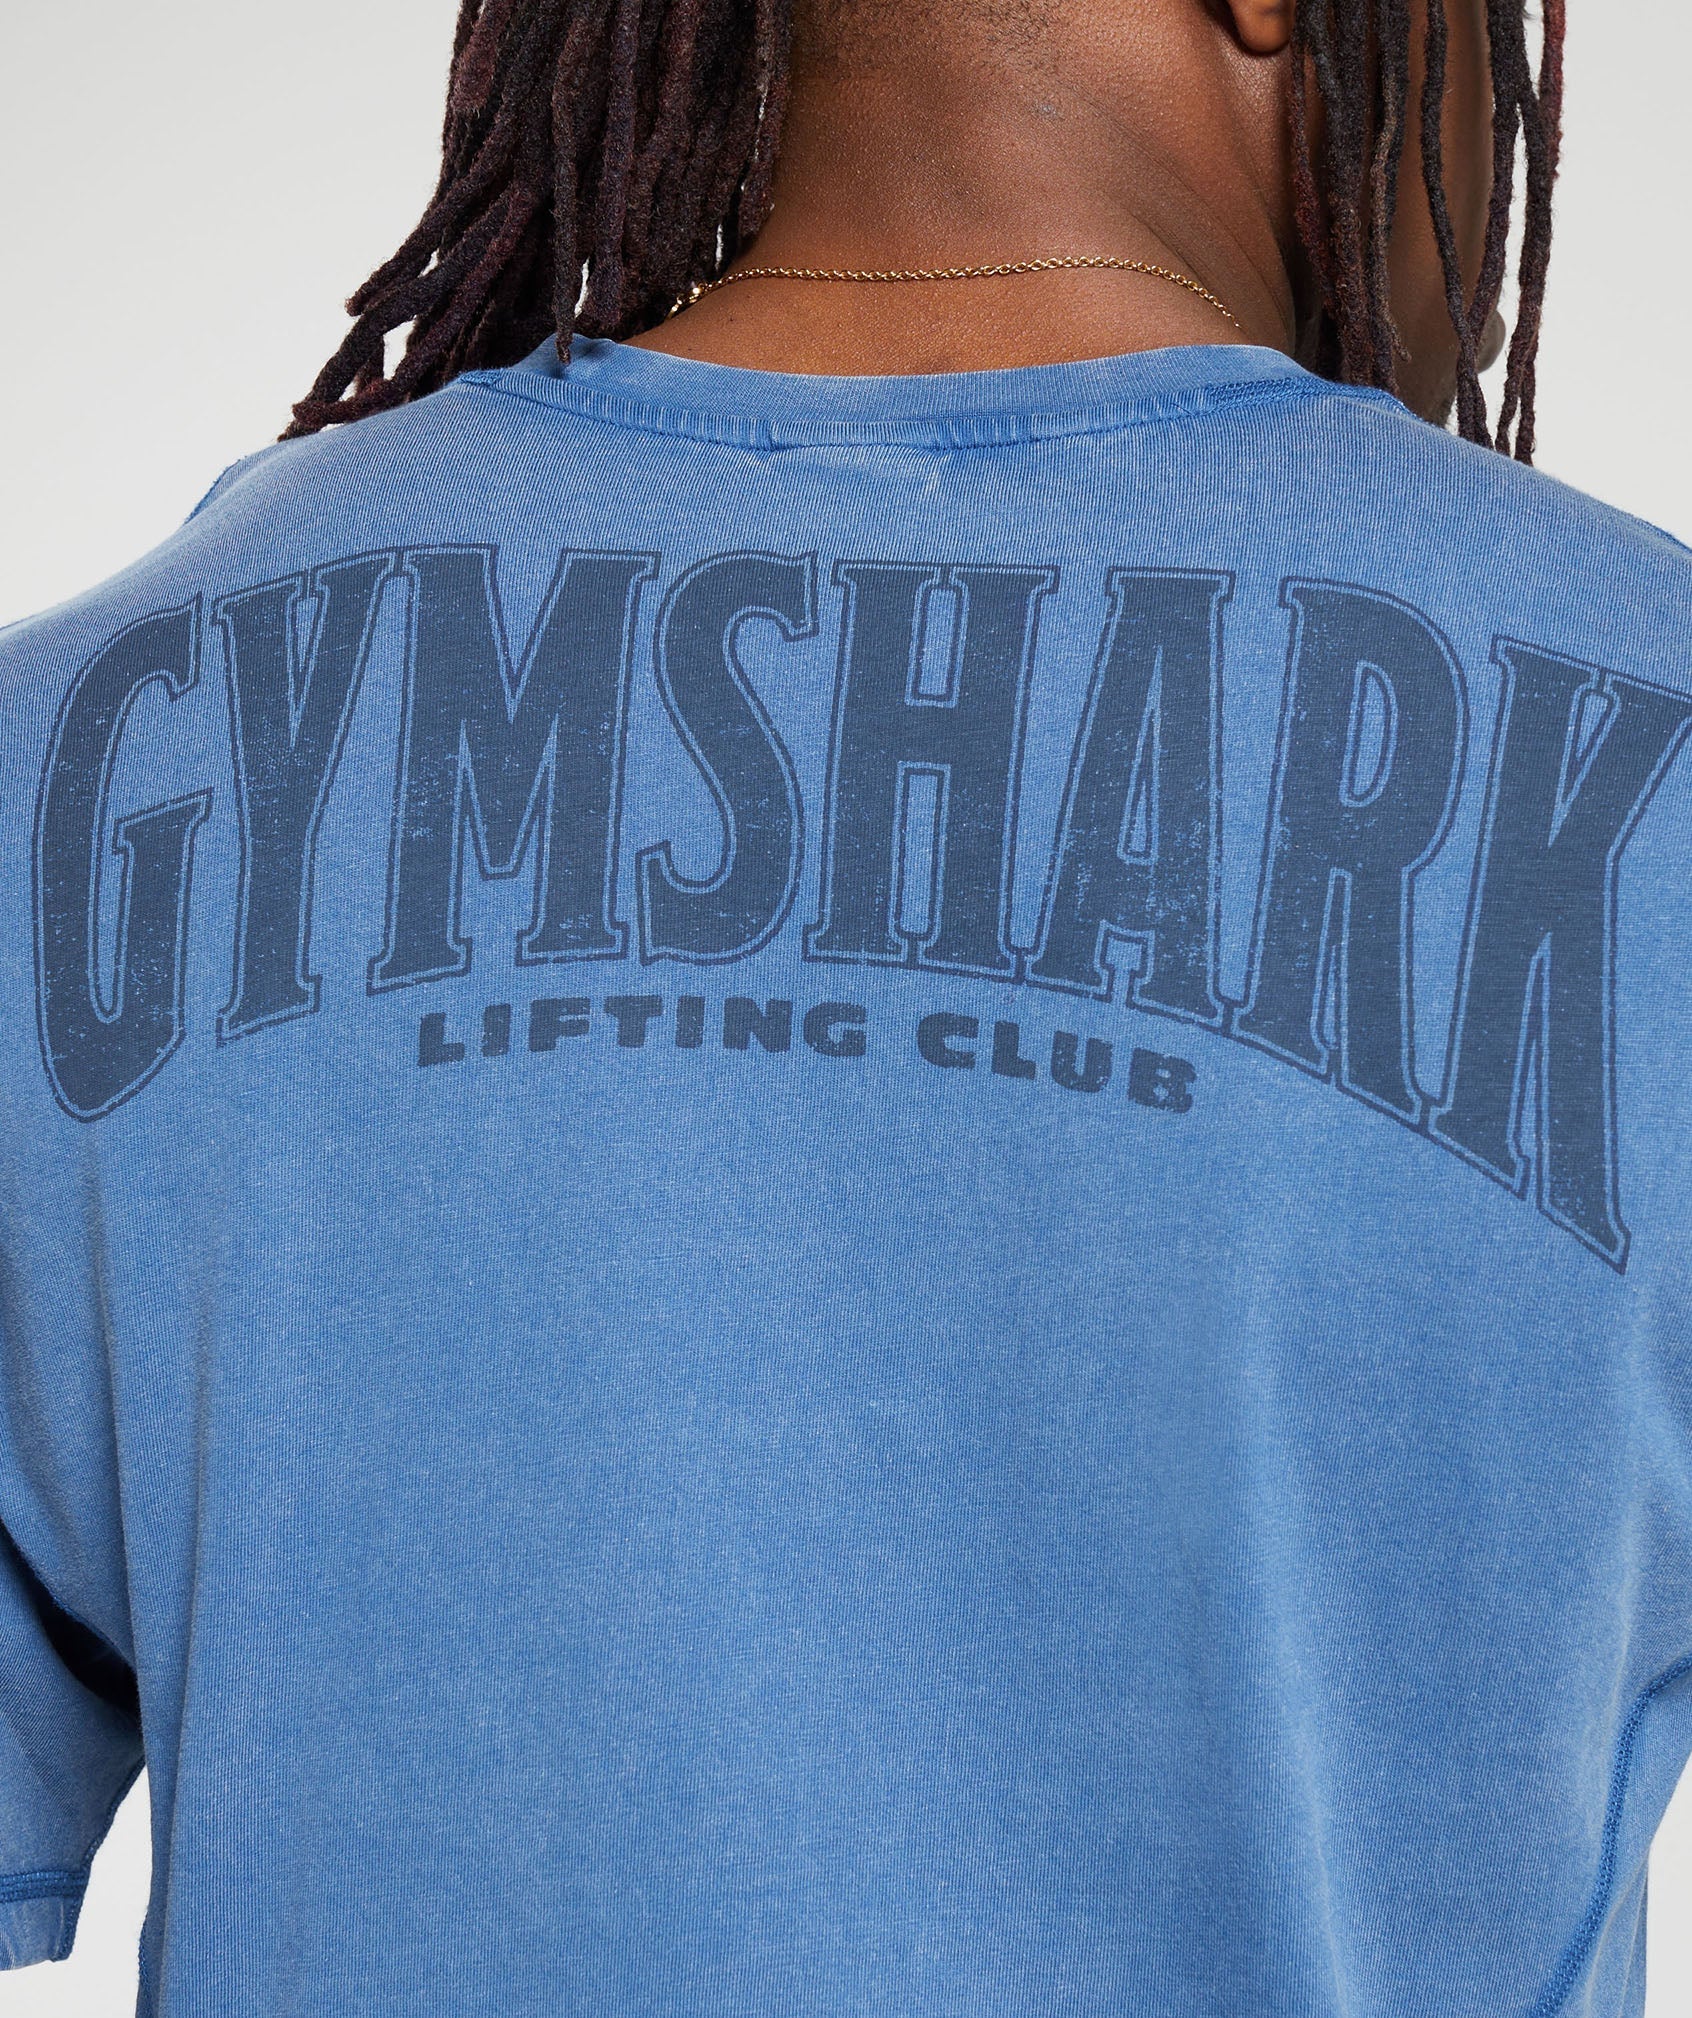 Gymshark Heritage Washed T-Shirt - Vintage Blue